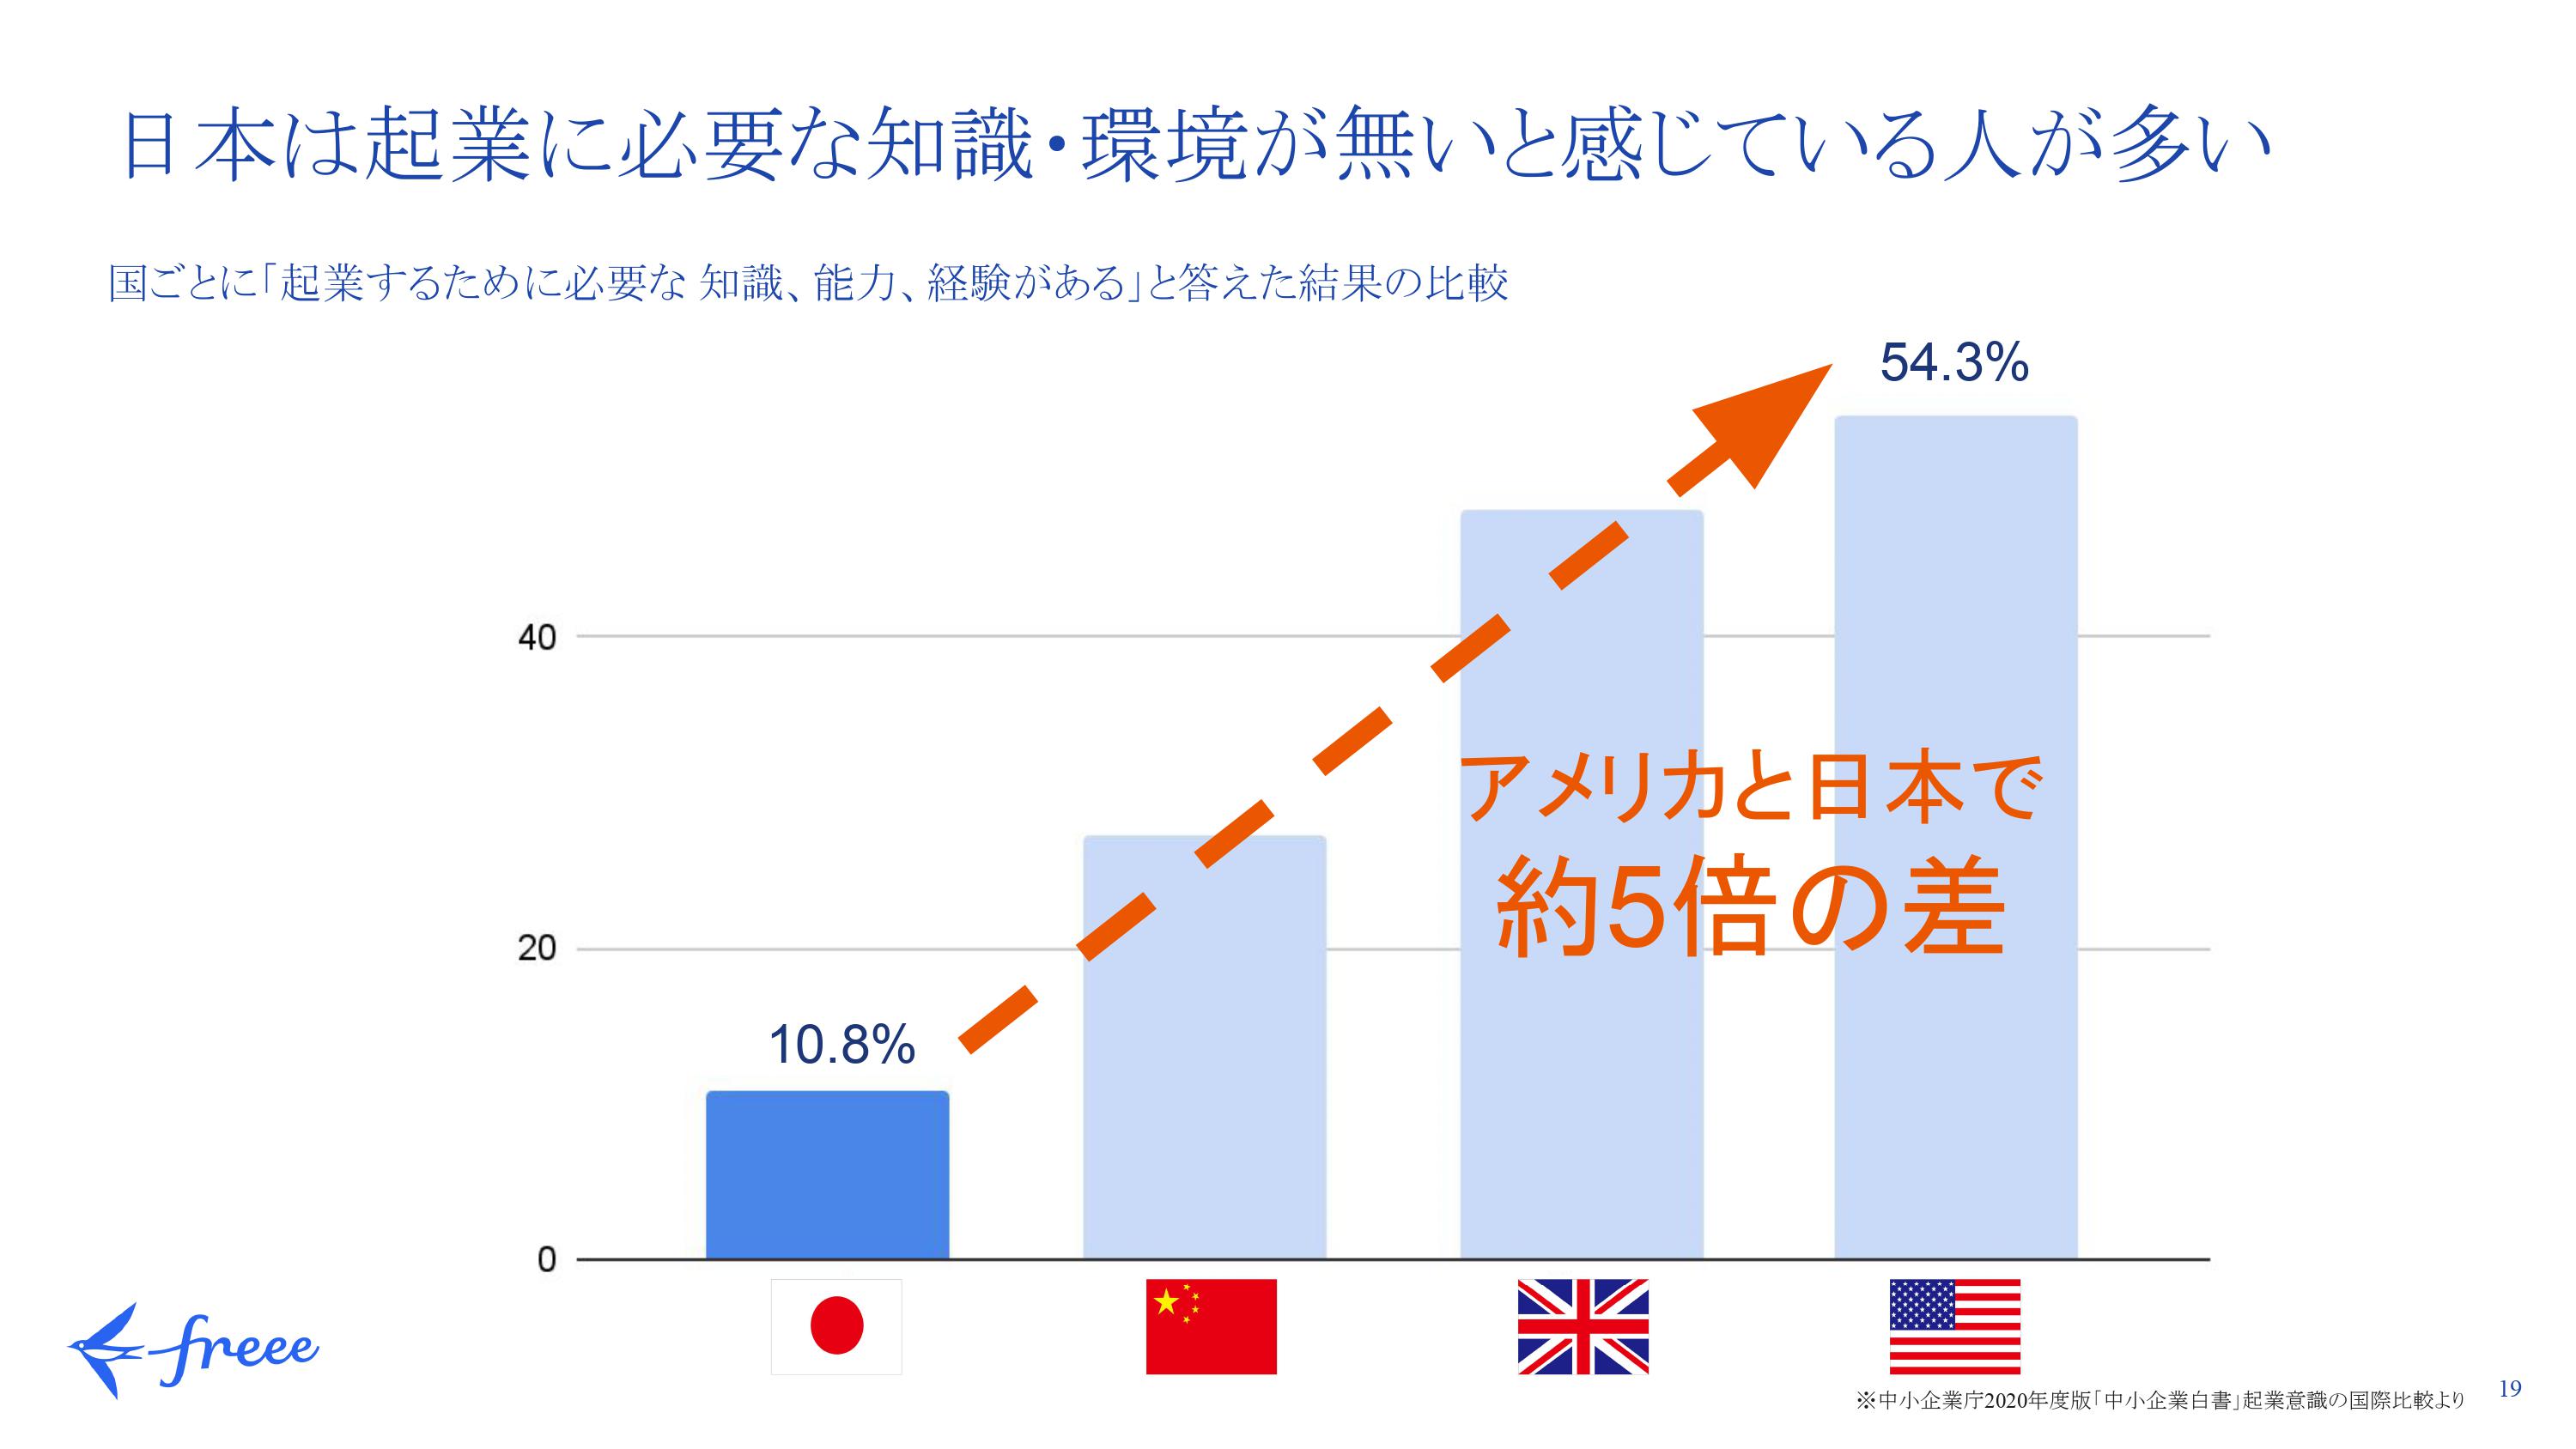 アメリカと日本で5倍も違う、「起業」に対するハードルの差 「キャリアの選択肢の1つ」として考える、起業という働き方 - ログミーBiz